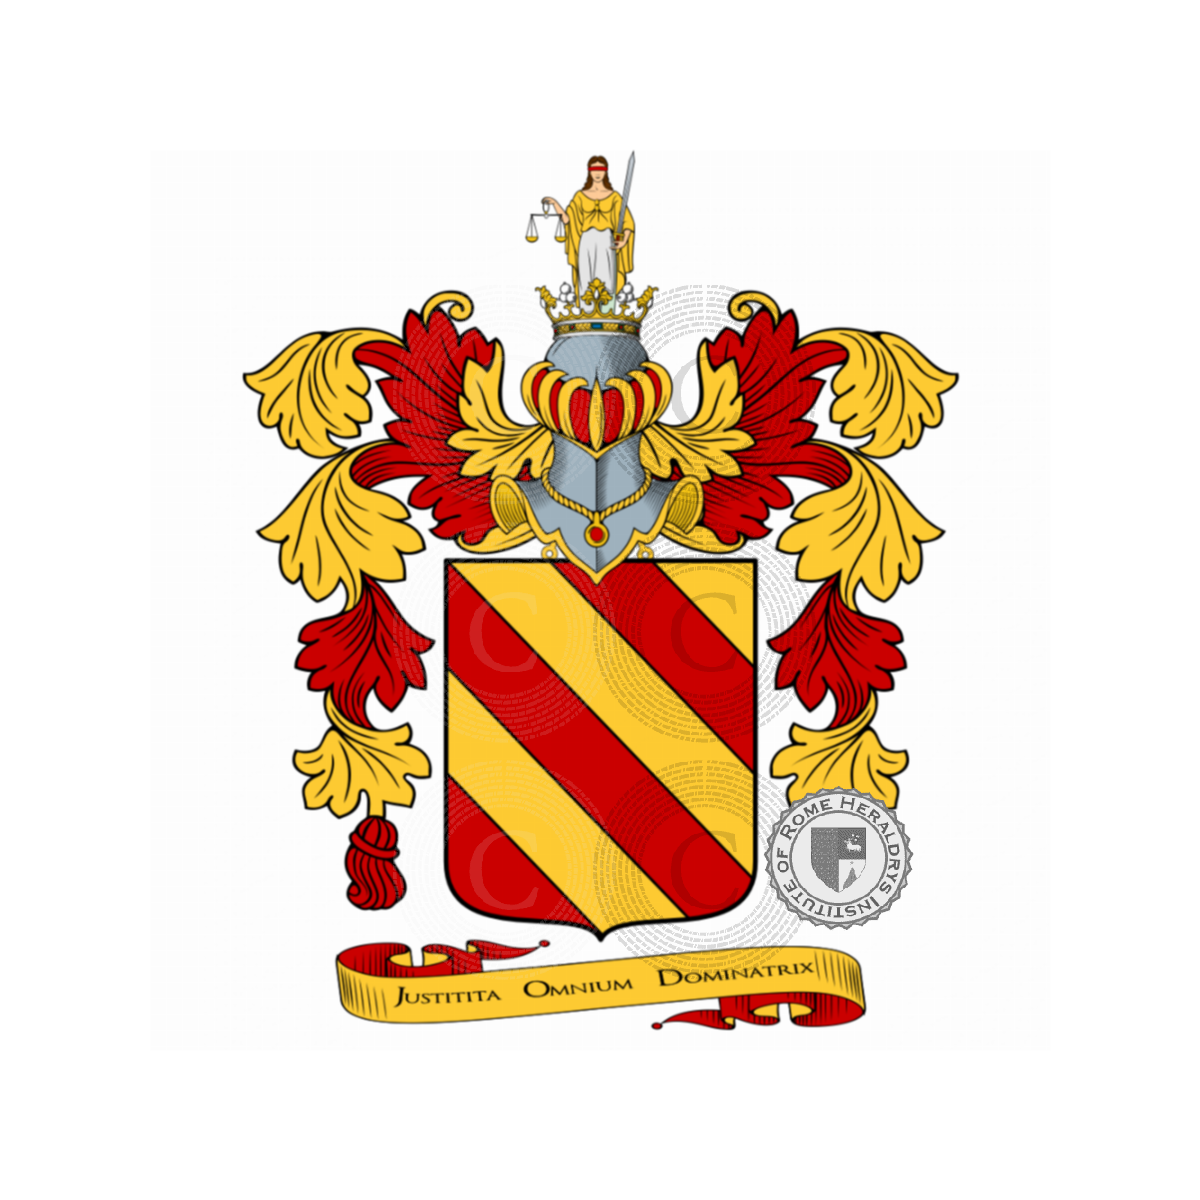 Escudo de la familiaGhisileri, Consiglieri,Ghisilieri,Ghislieri